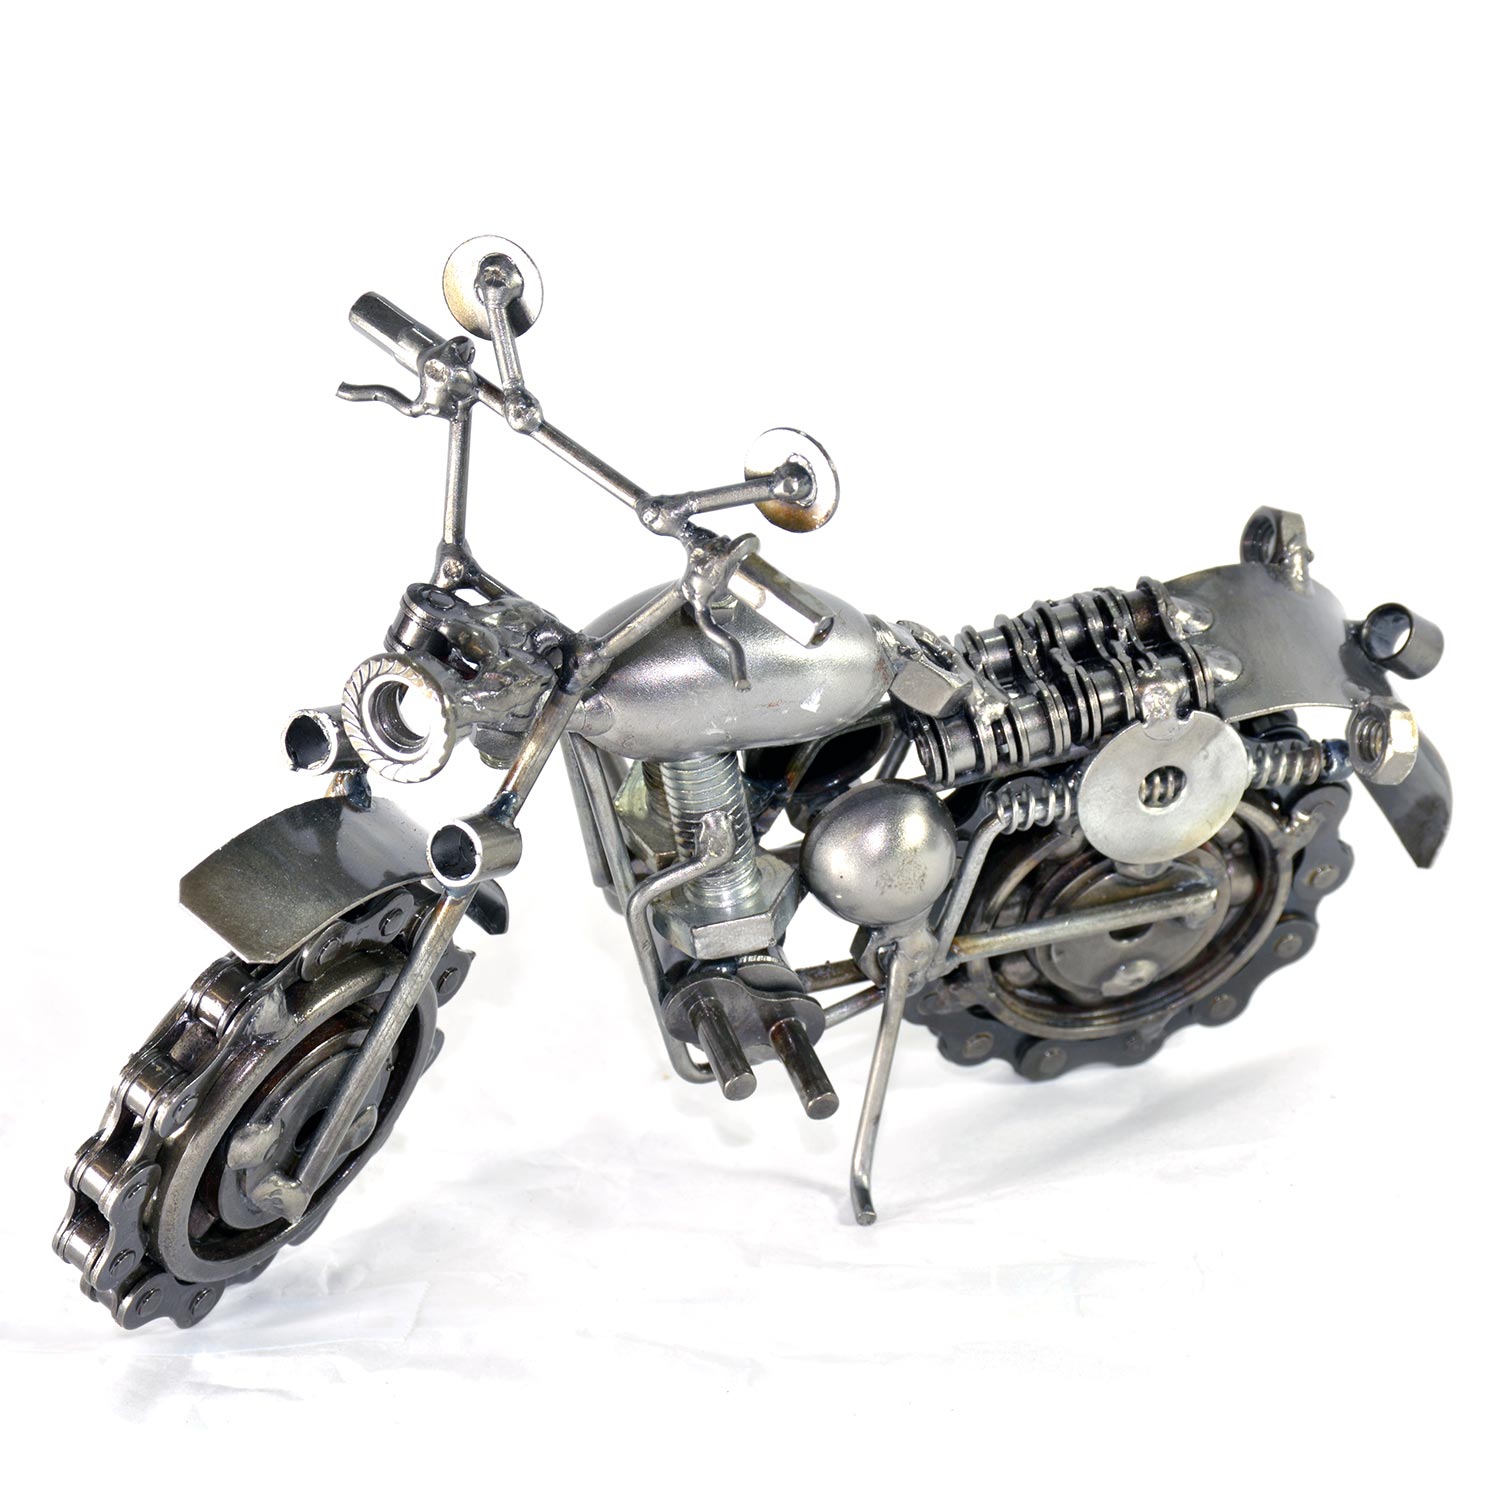 Recycled Art Dirt Bike Scrap Metal Sculpture Motorbike Motorcycle Model Kit Toy 